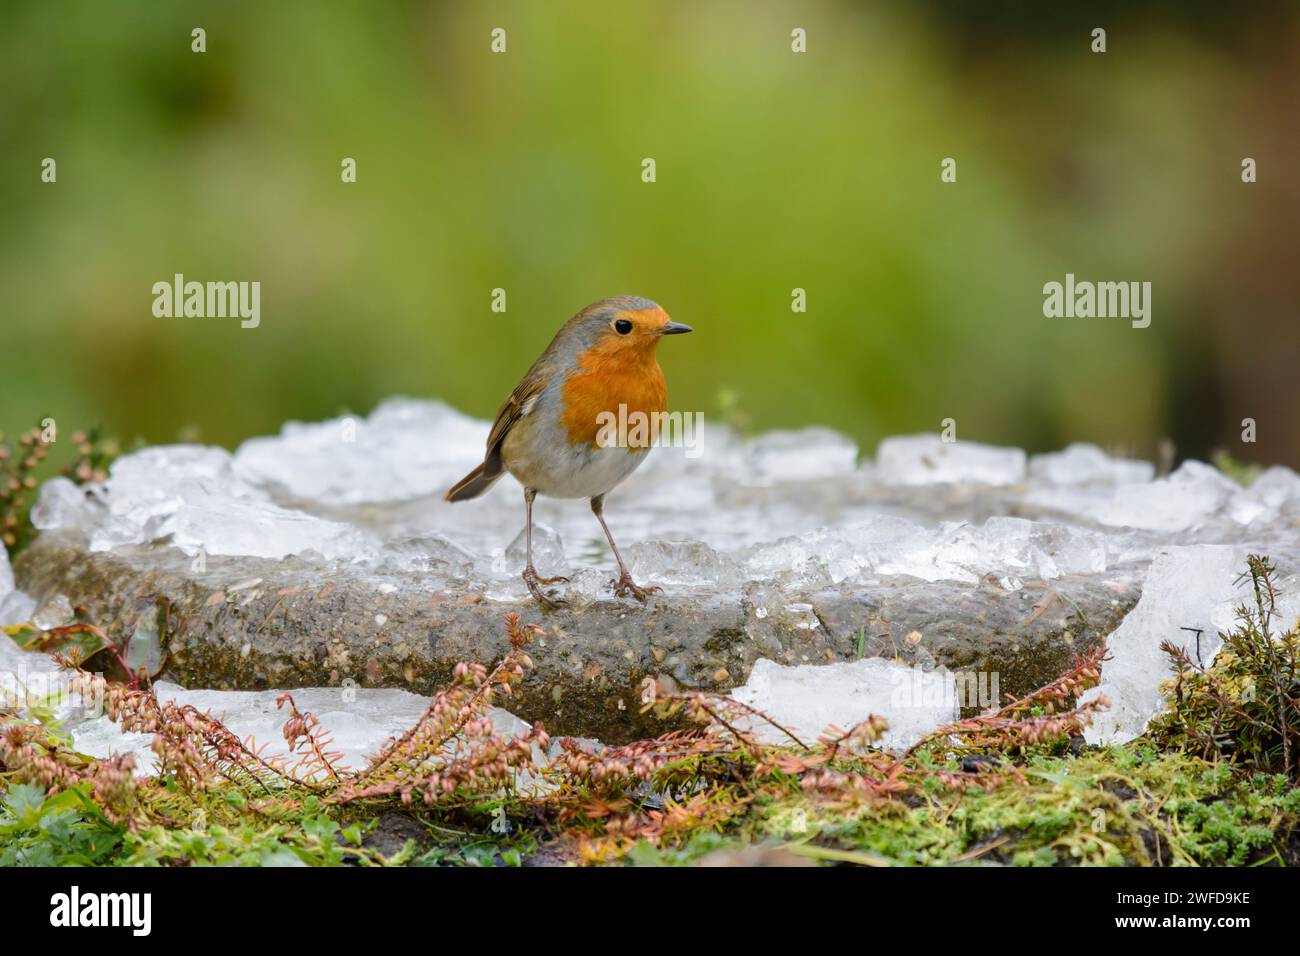 robin Erithacus rubecula européen, perché sur le bain d'oiseaux dans le jardin avec de la glace brisée, novembre. Banque D'Images